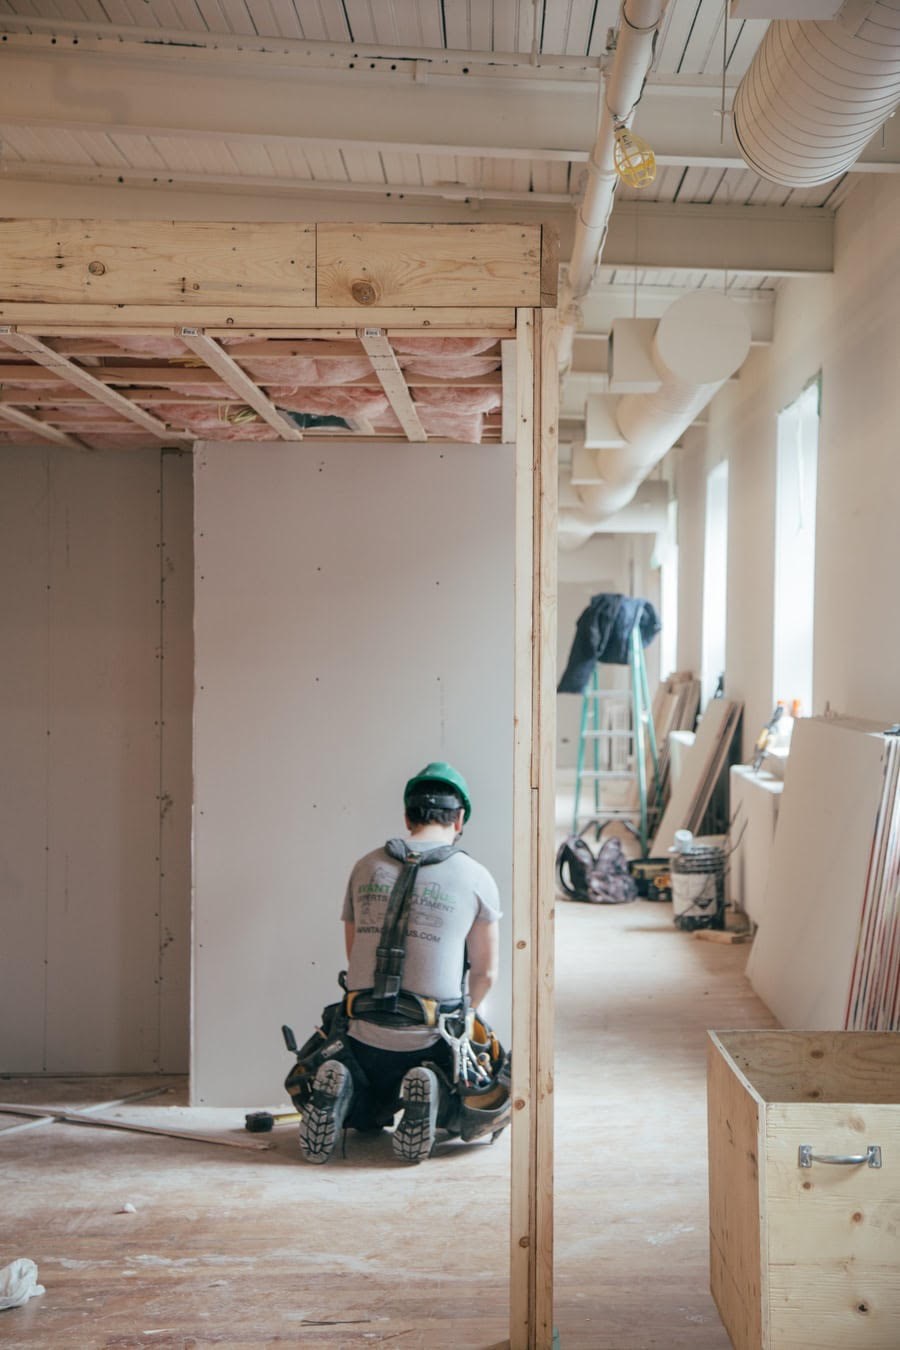 En stor del av arbetskraften inom byggbranschen i Europa utgörs av migrantarbetare. Foto: Caritas.